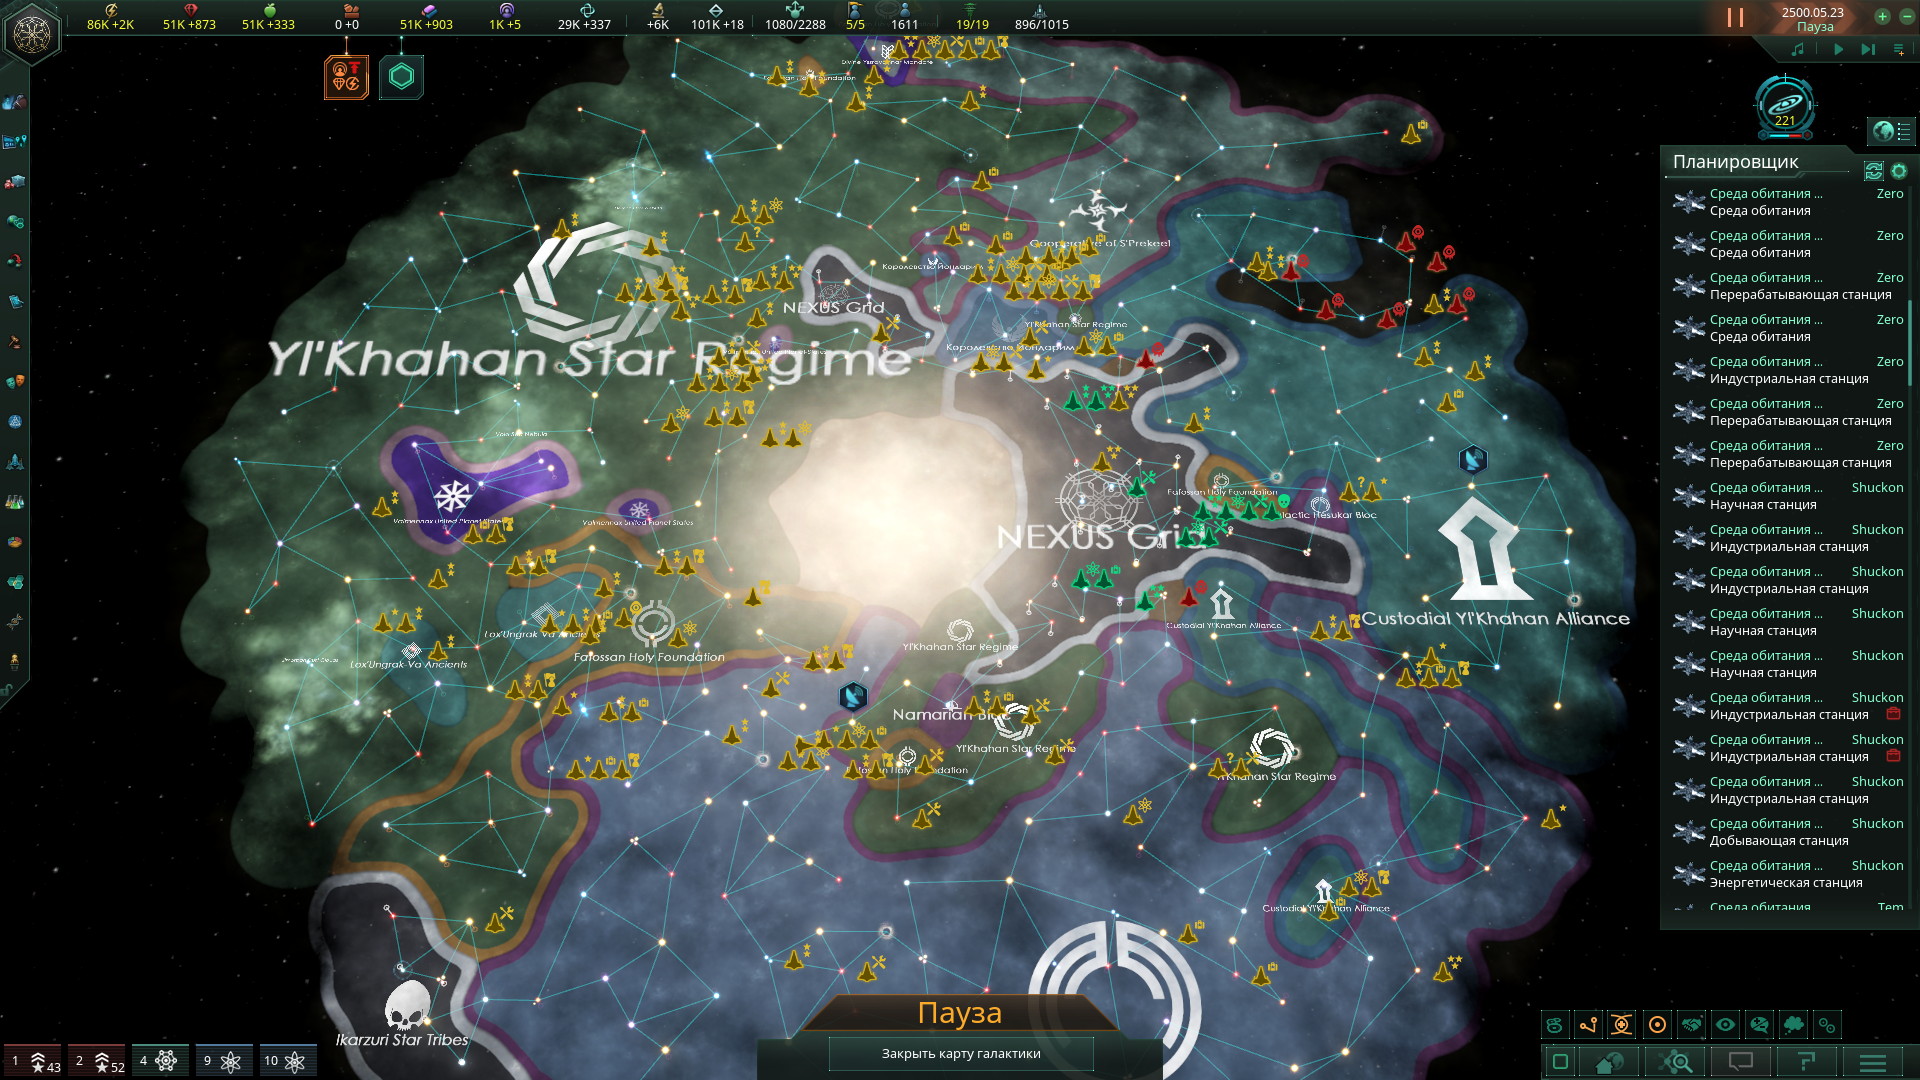 Stellaris, Гайд: игра в Одну планету "высокая империя" | Пикабу